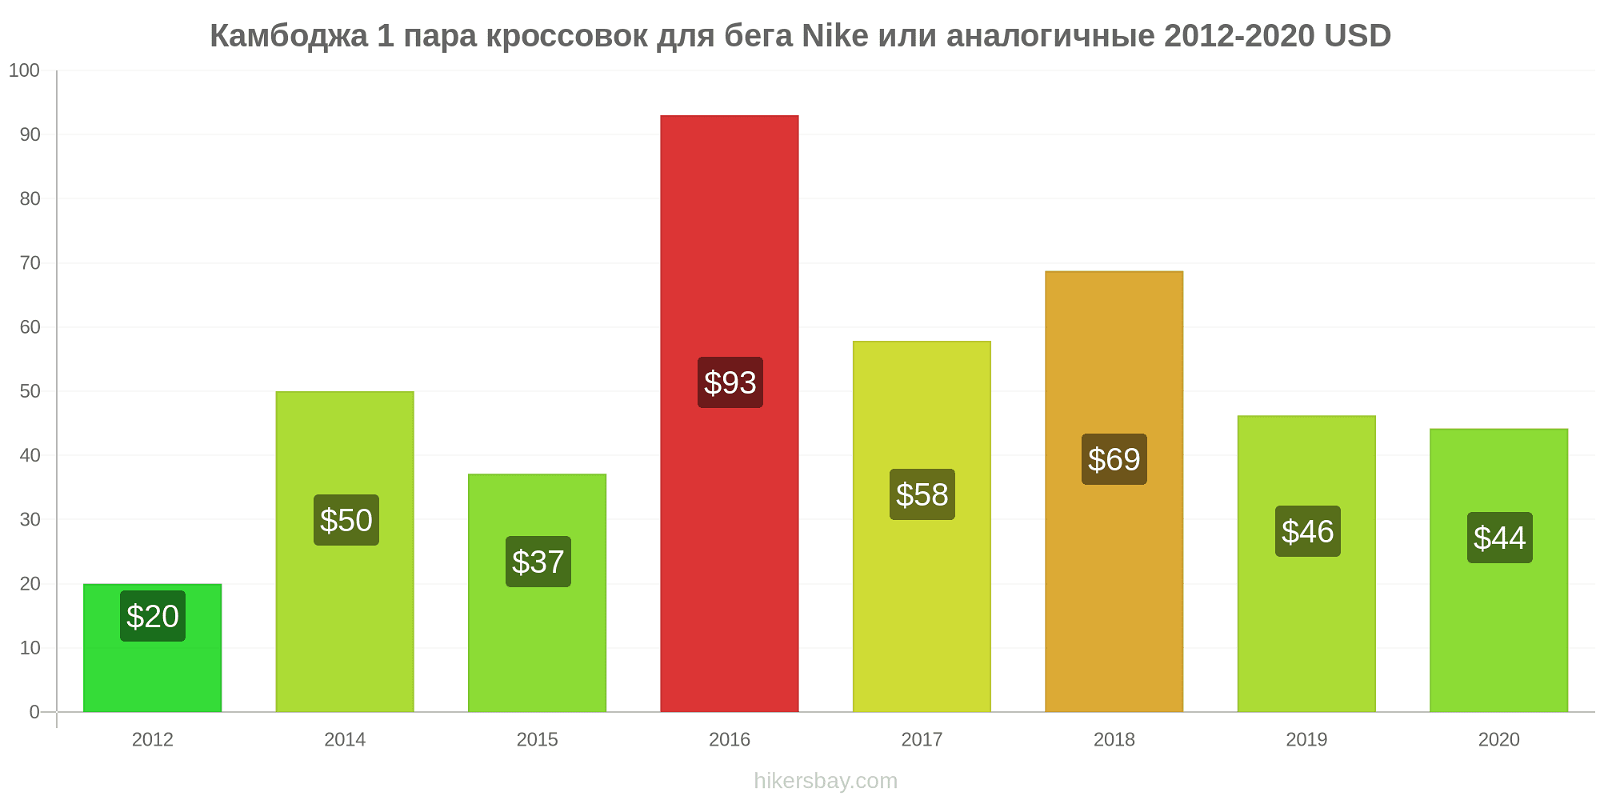 Камбоджа изменения цен 1 пара кроссовок для бега Nike или аналогичные hikersbay.com